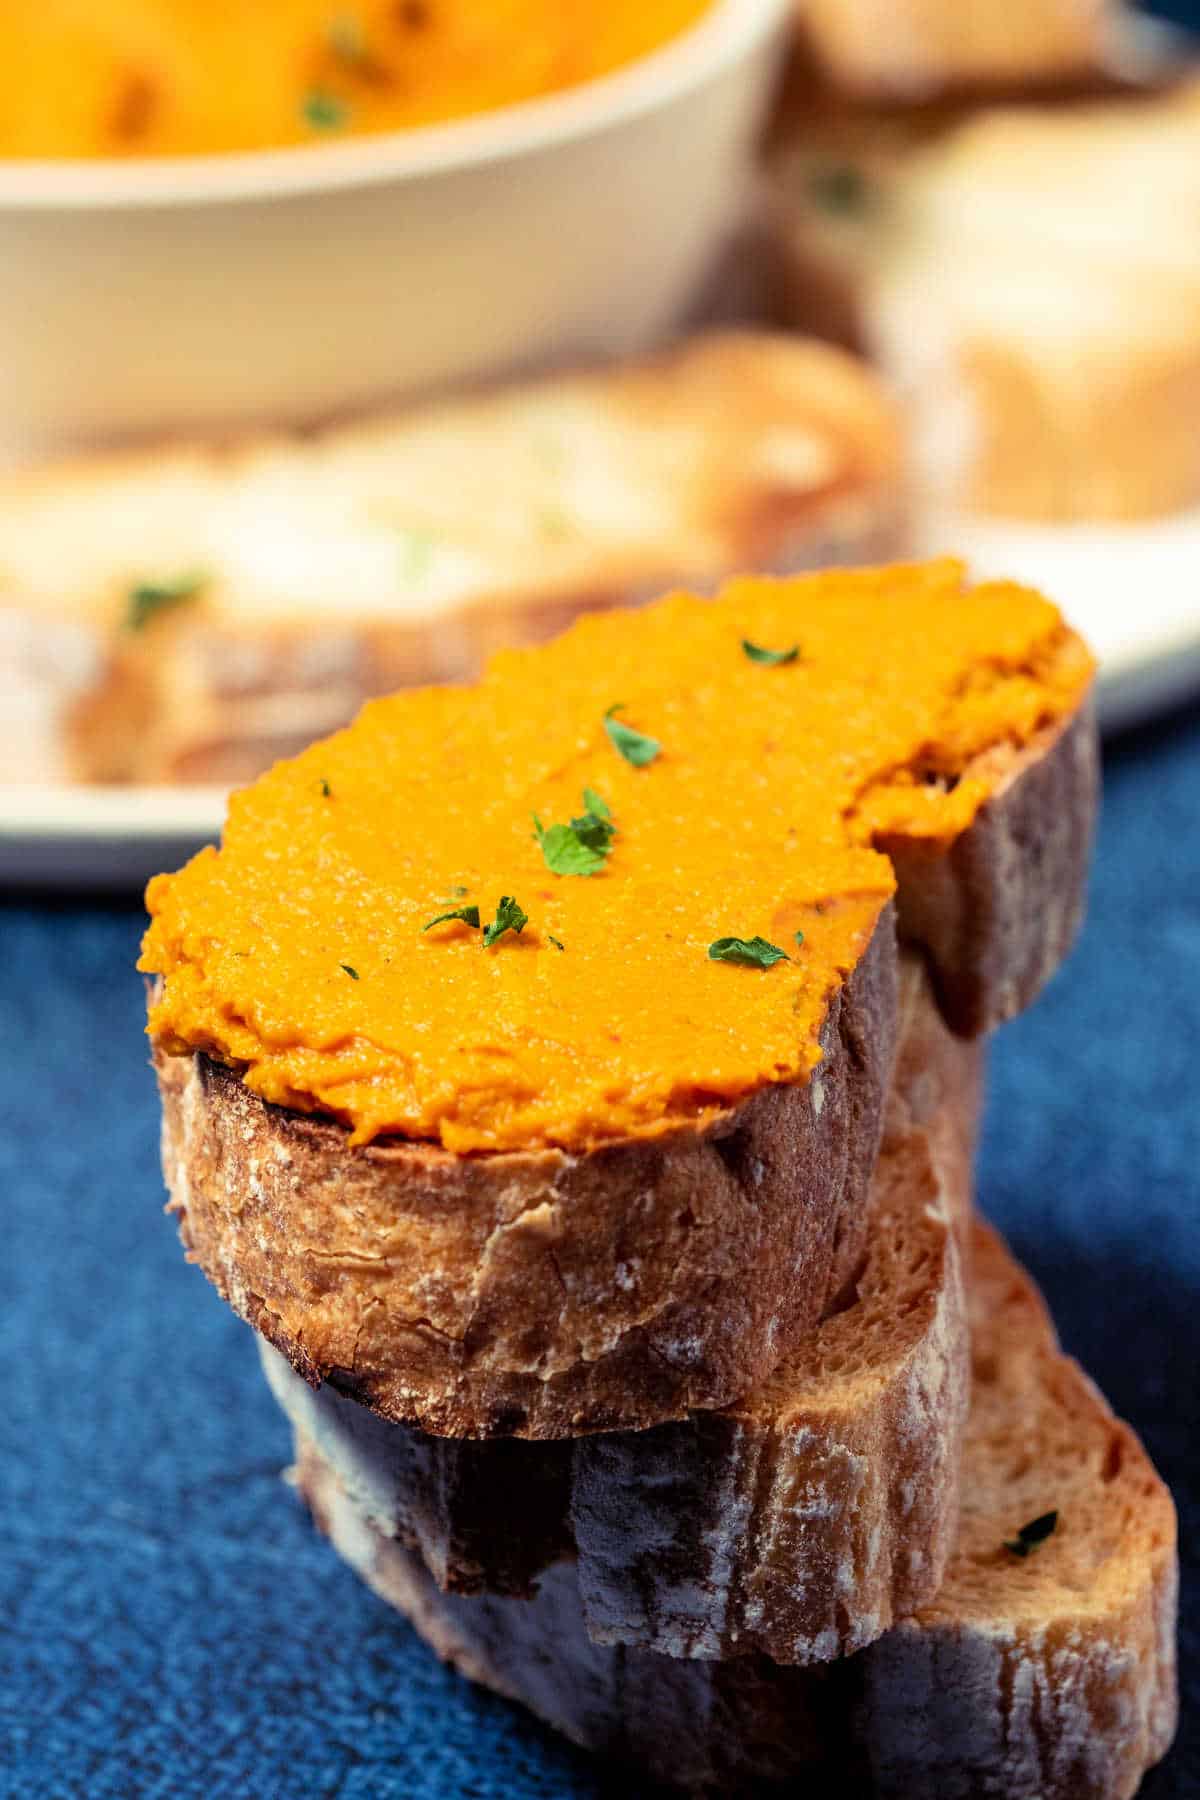 Vegan pâté spread on toast.